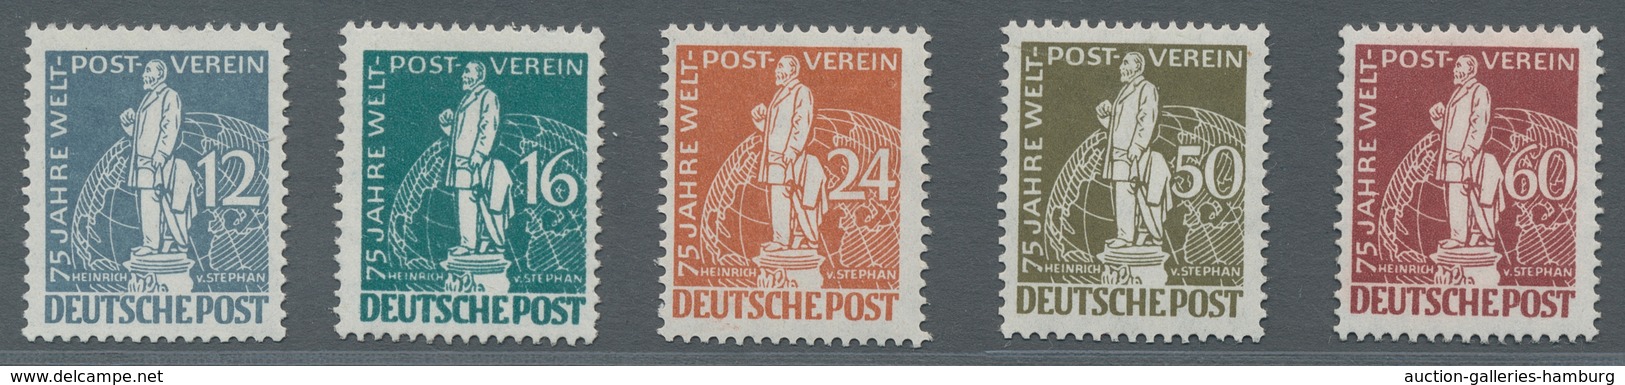 Berlin: 1949, Weltpostverein, Zwei Postfrische Sätze, Einwandfrei, Farbfrisch, Mi. 1500,00 - Unused Stamps